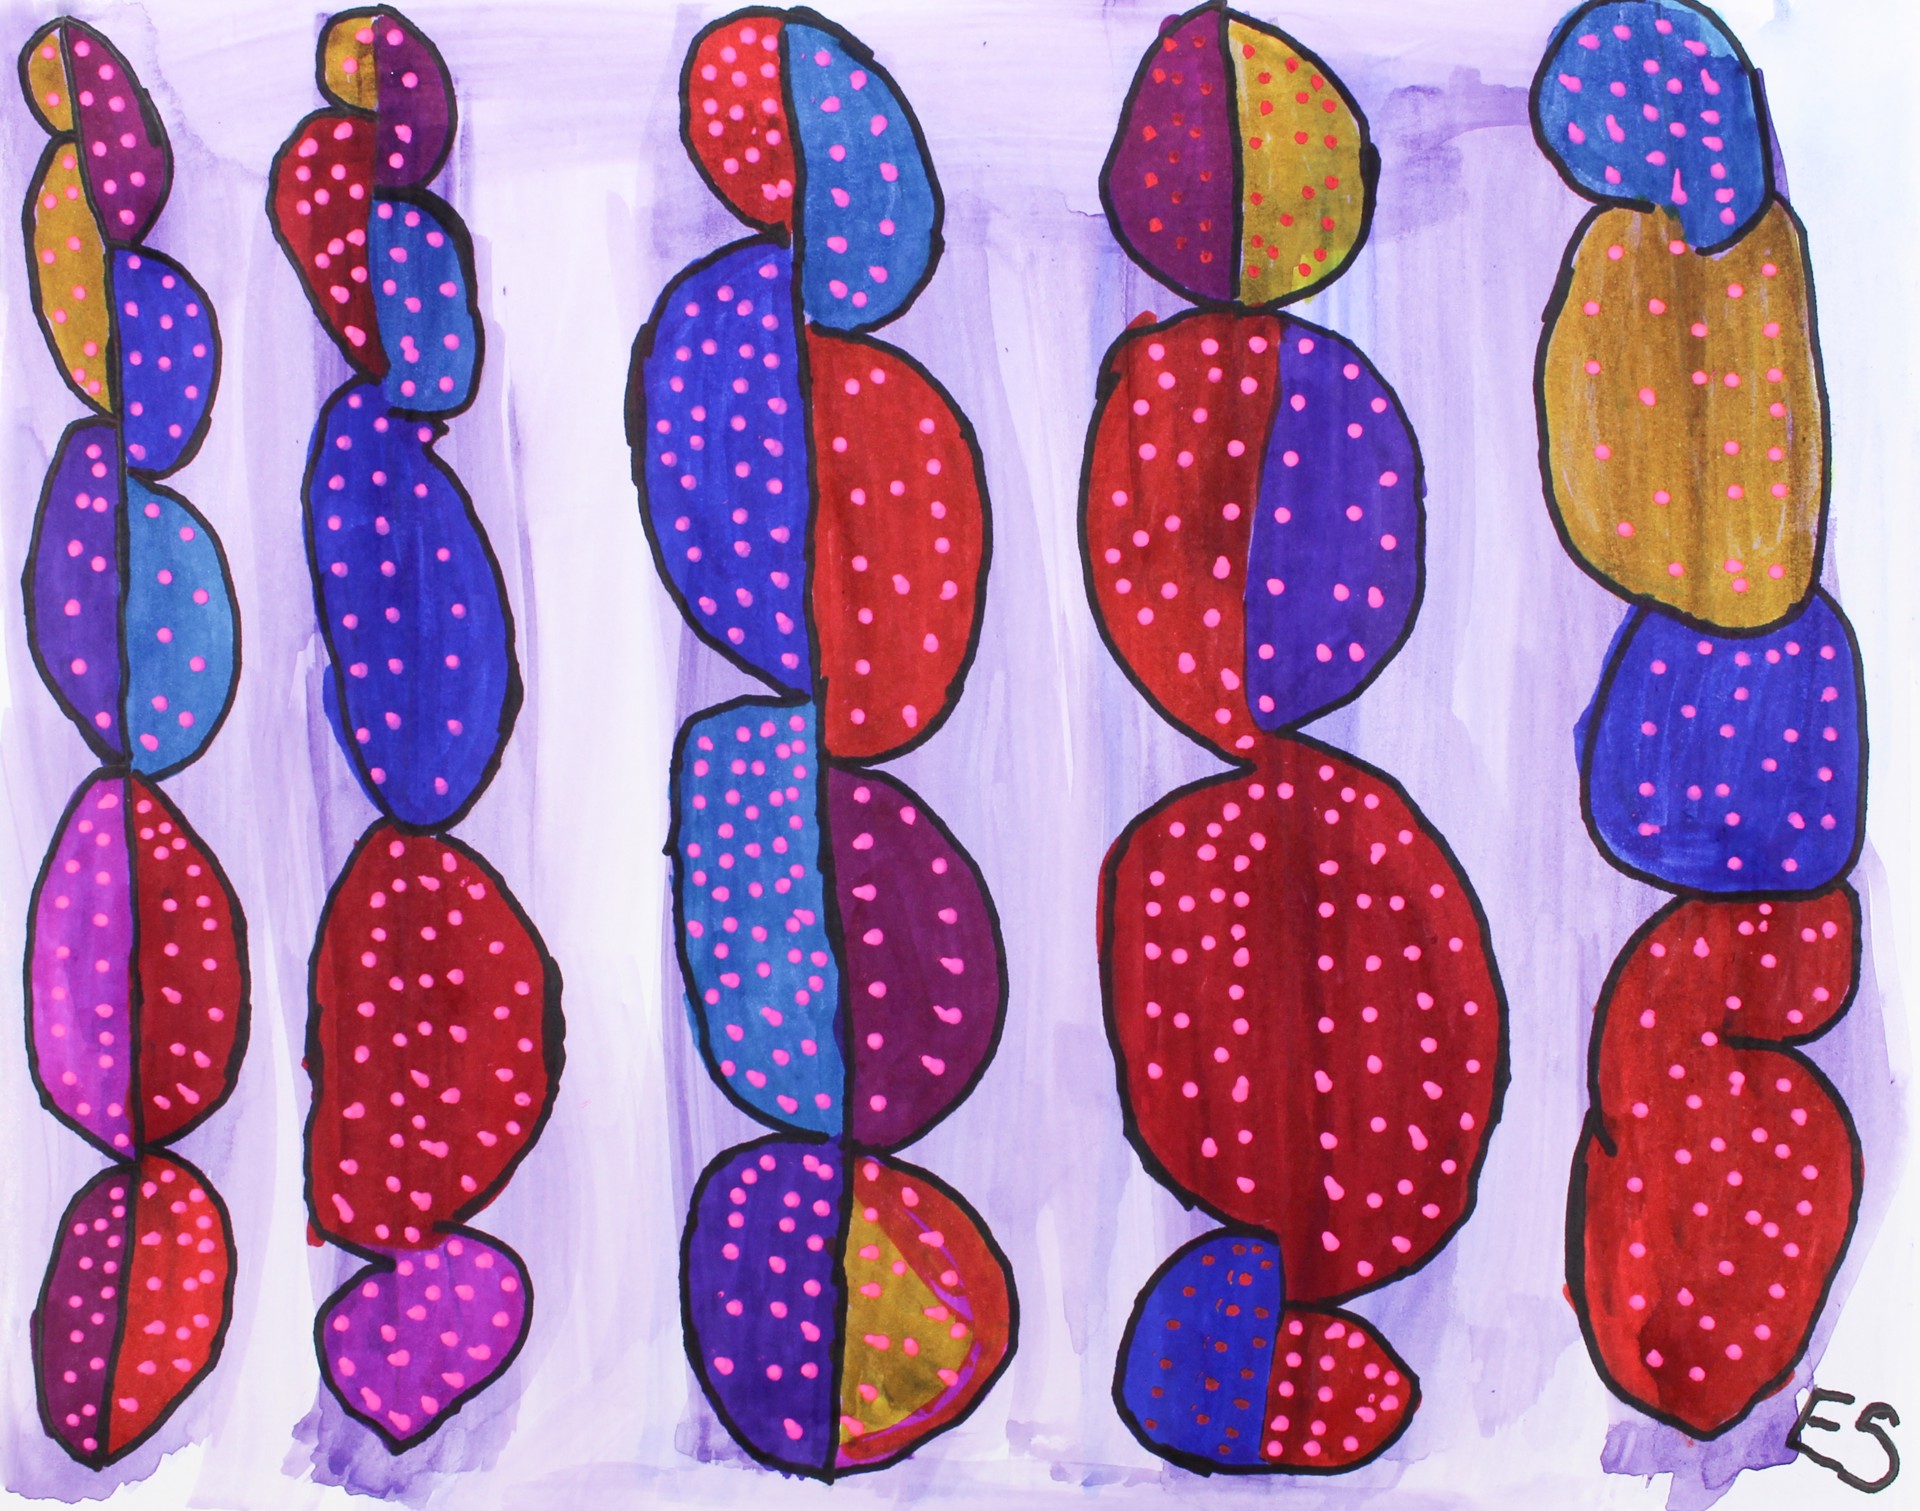 Polka Dot Trees by Eileen Schofield